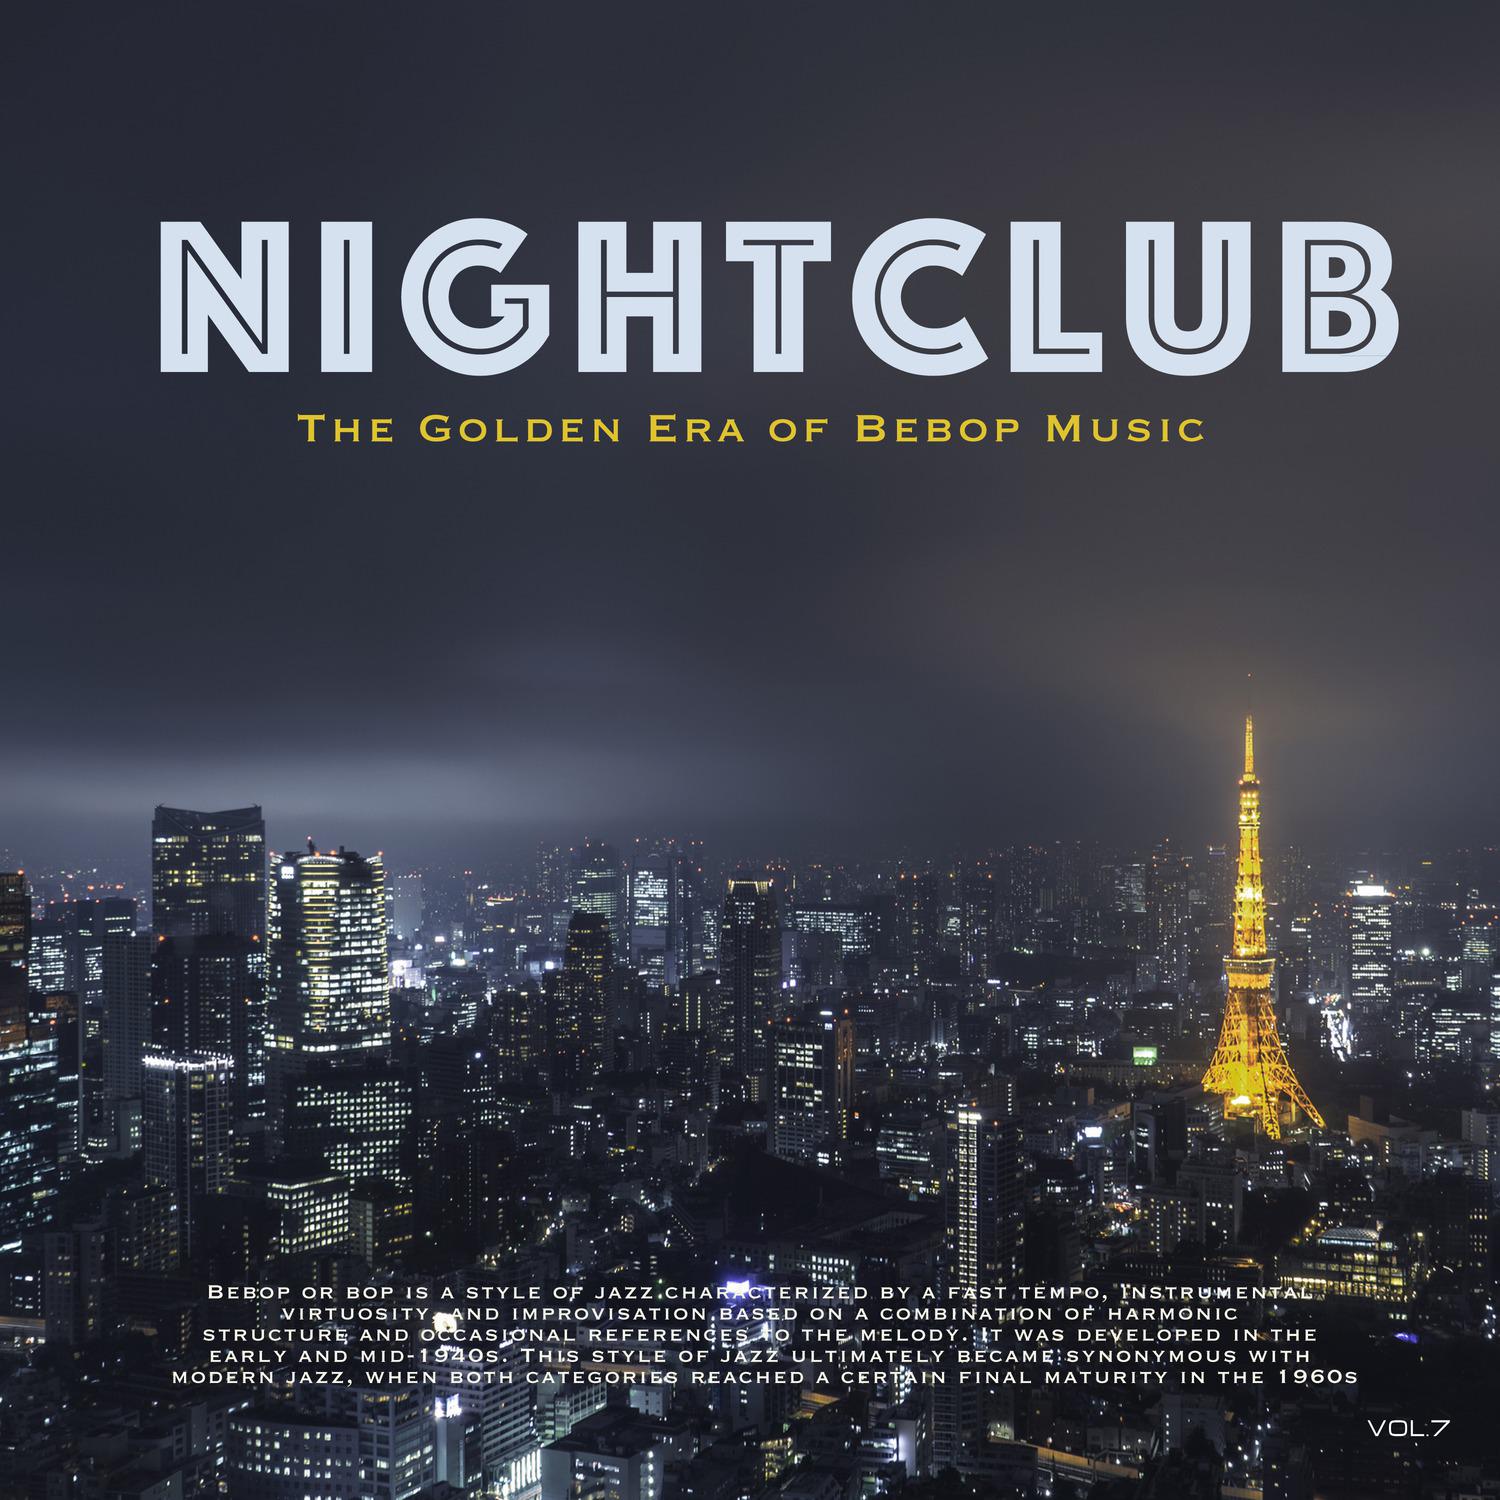 Nightclub, Vol. 7 (The Golden Era of Bebop Music)